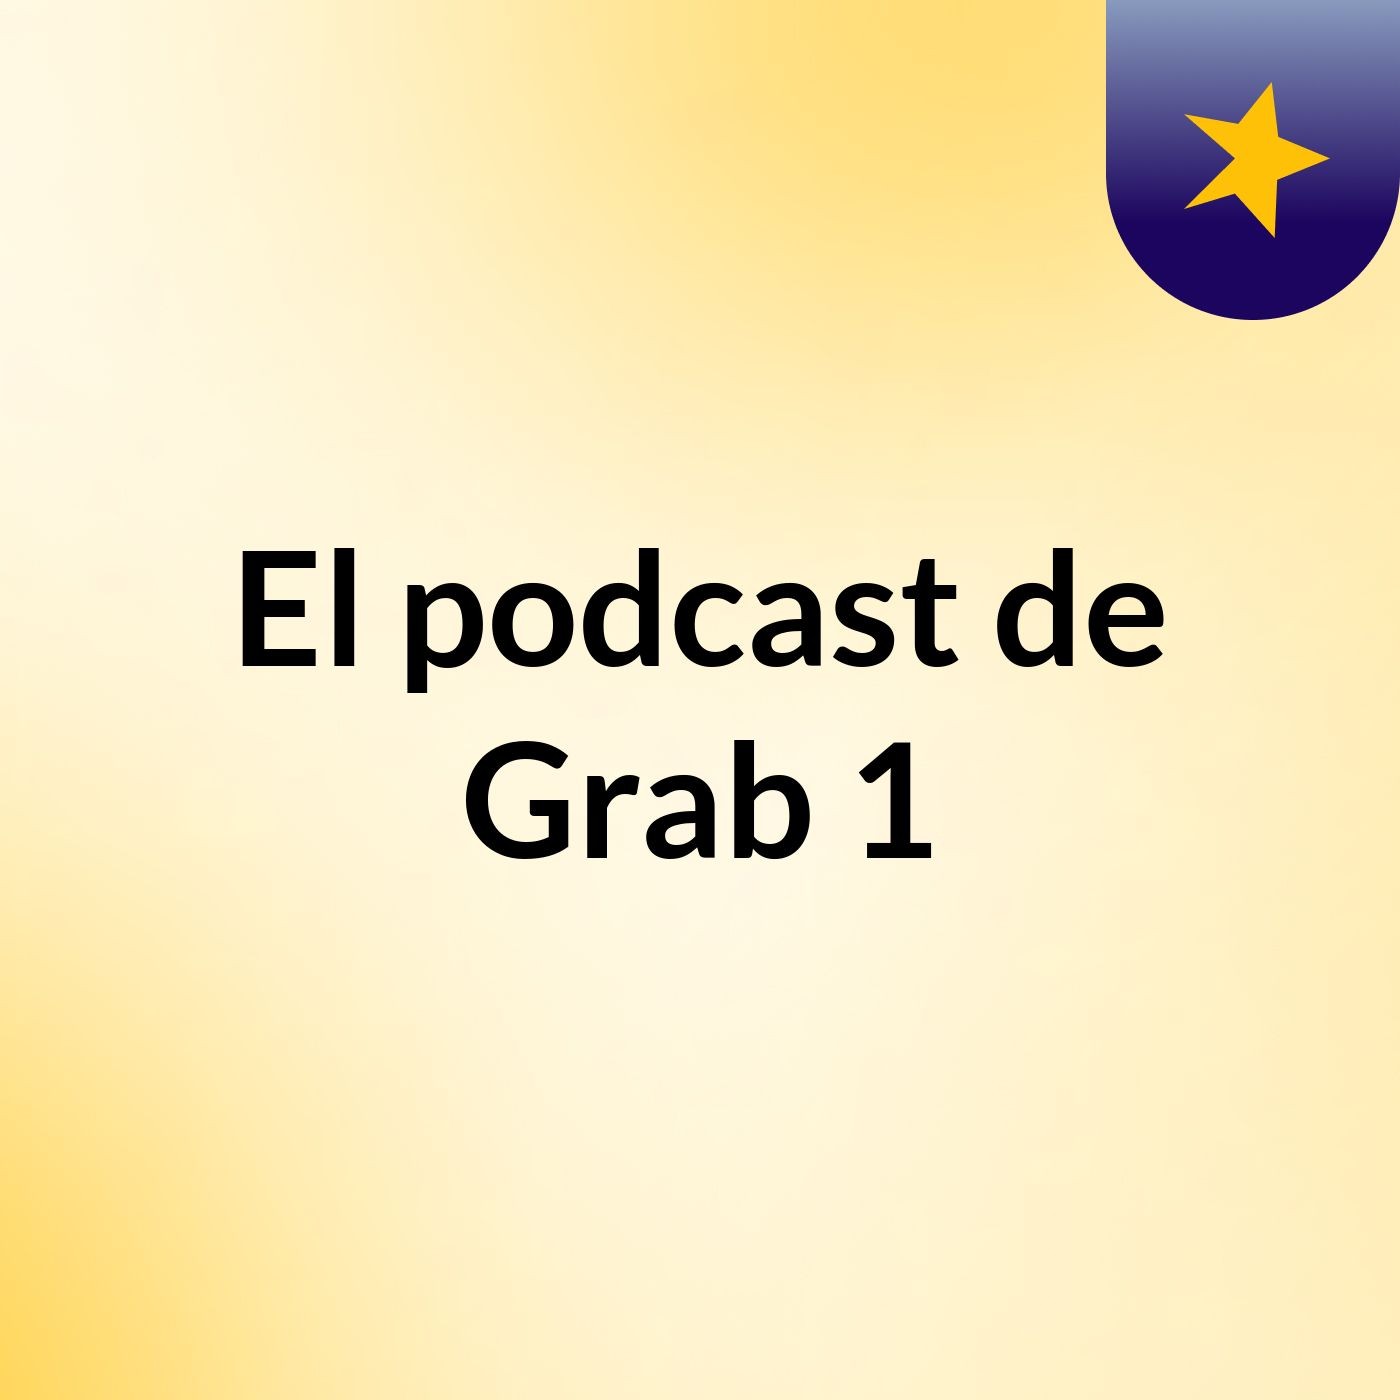 Episodio 4 - El podcast de Grab 1